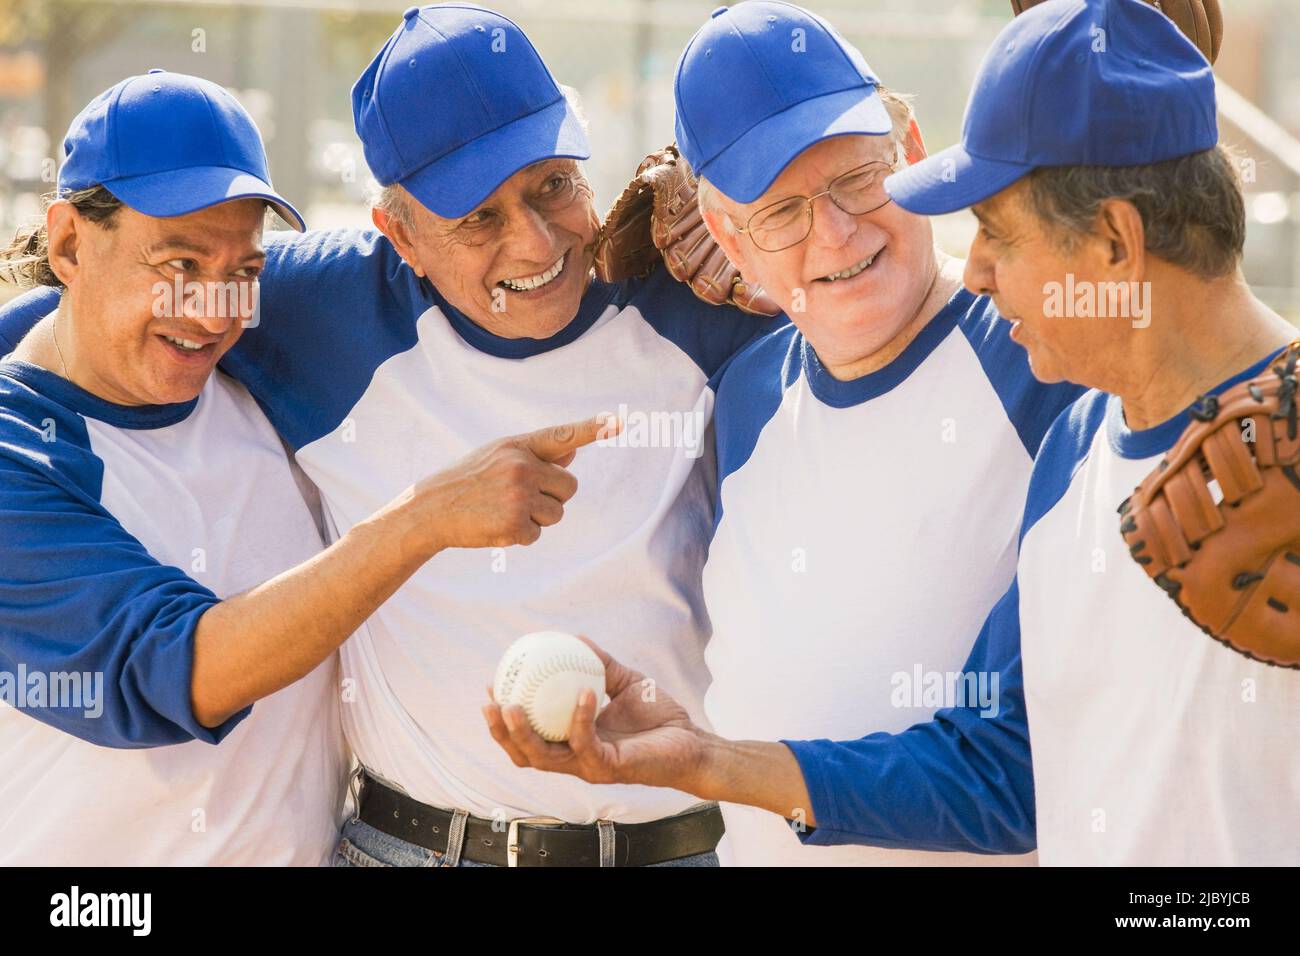 Les hommes aînés jouant sur l'équipe de baseball Banque D'Images